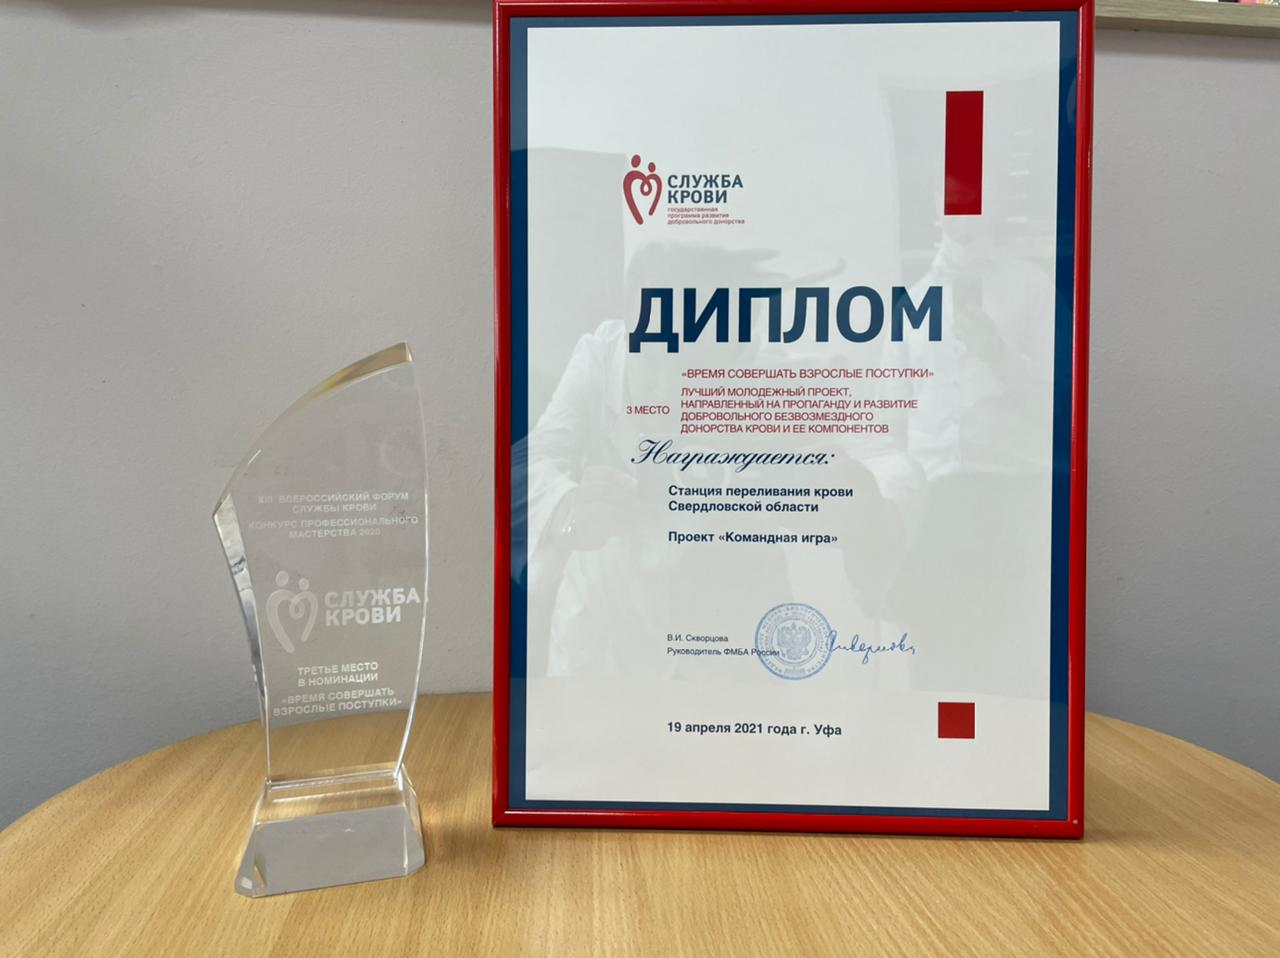 Один из лучших проектов в сфере донорства крови реализуется в Свердловской области